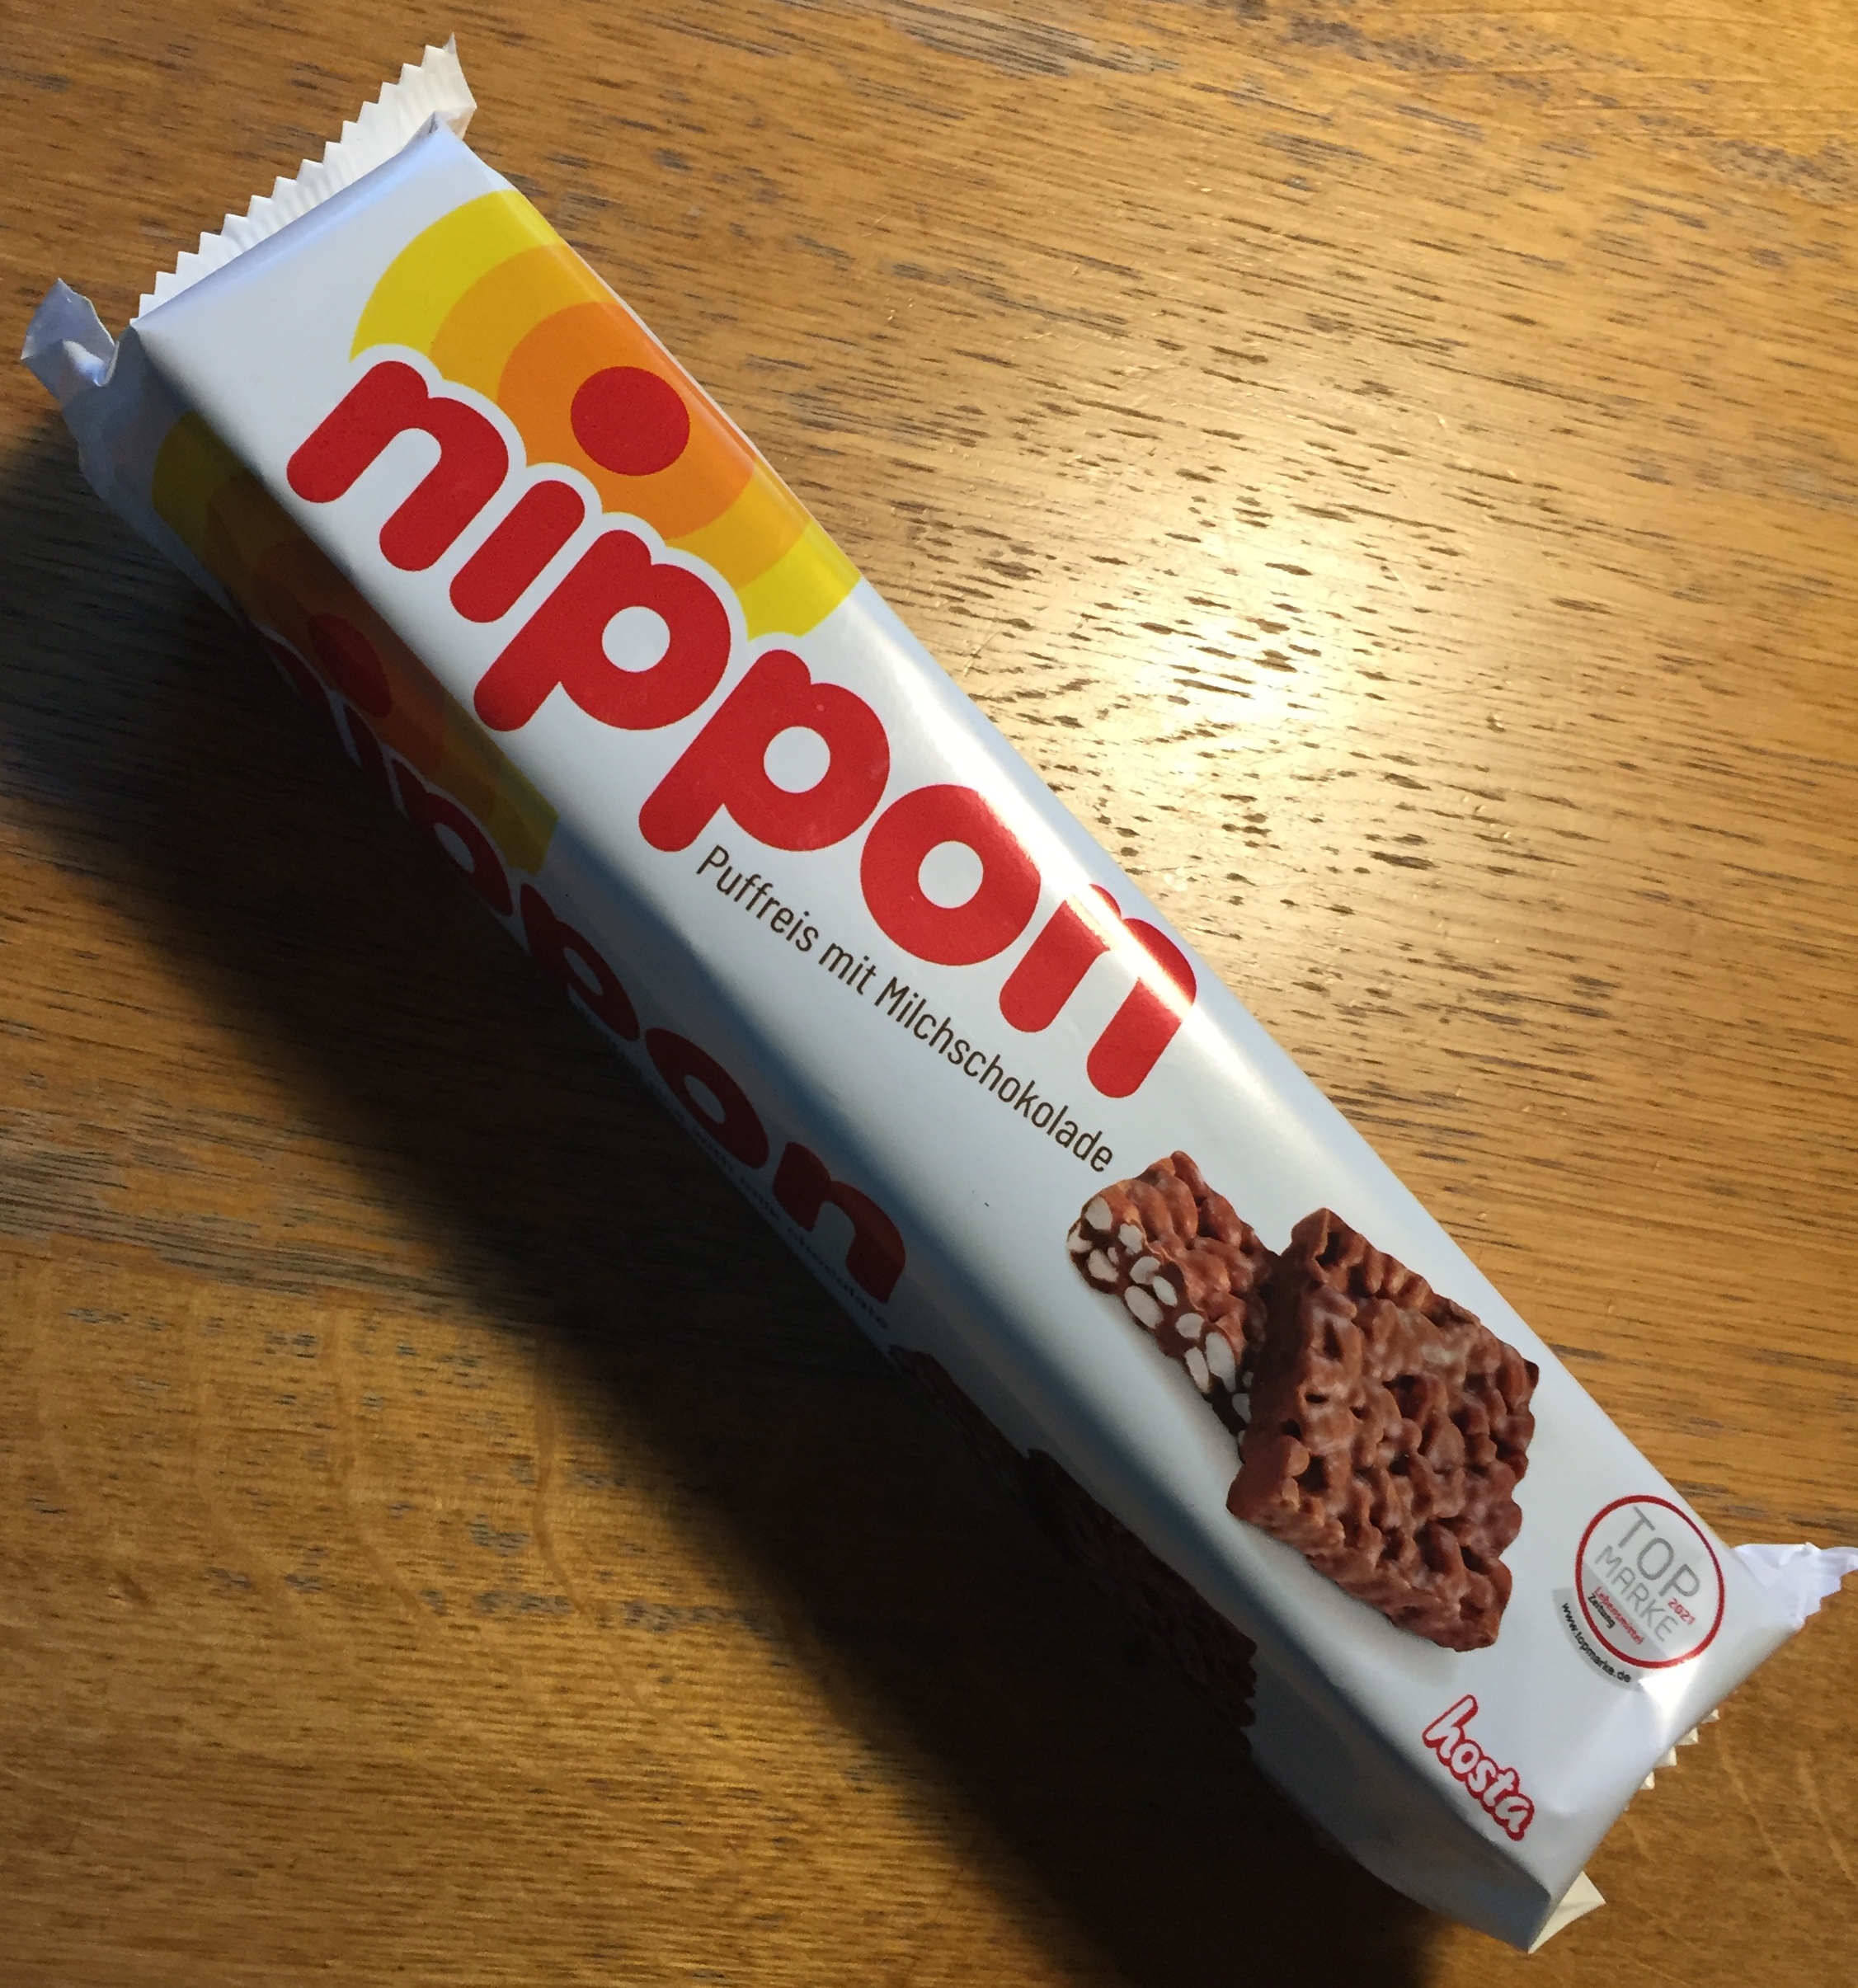 Nippon – Das Original!
Der crunchy Puffreis-Schokoladen-Snack. Verpuffend gut.